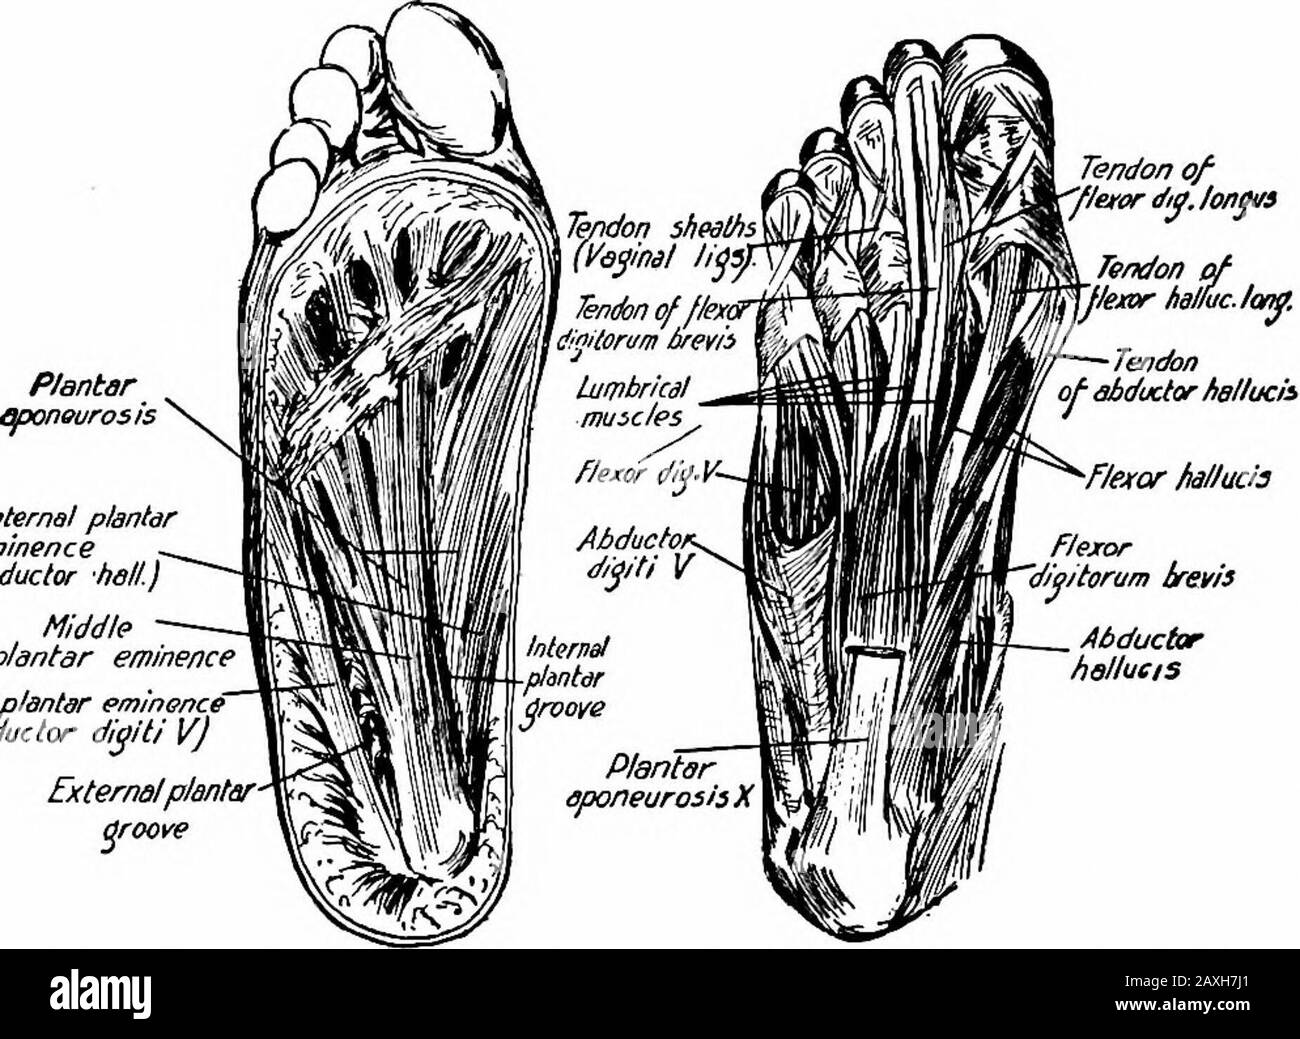 Un manuel d'anatomie . dans la surface latérale de la base du premier phalanx du petit orteil. Actions.—Fléchit et débouche le petit orteil. 2 o8 approvisionnement En Nerf MYOLOGY.—^nerf plantaire latéral (S. i, 2). Deuxième couche.—les mm. Lumbricales sont des muscles de Jour associés aux tendons de flexion et de digitorum longus. La première provient du côté thémadial du tendon pour le deuxième orteil et les autres proviennent du côté adjacent des quatre tendons. Chaque muscle est inséré dans le tendon extenseur et la base du premier phalanx des quatre orteils extérieurs, comme dans la main. Actions.—Flex le JO métatarsophalangial Banque D'Images